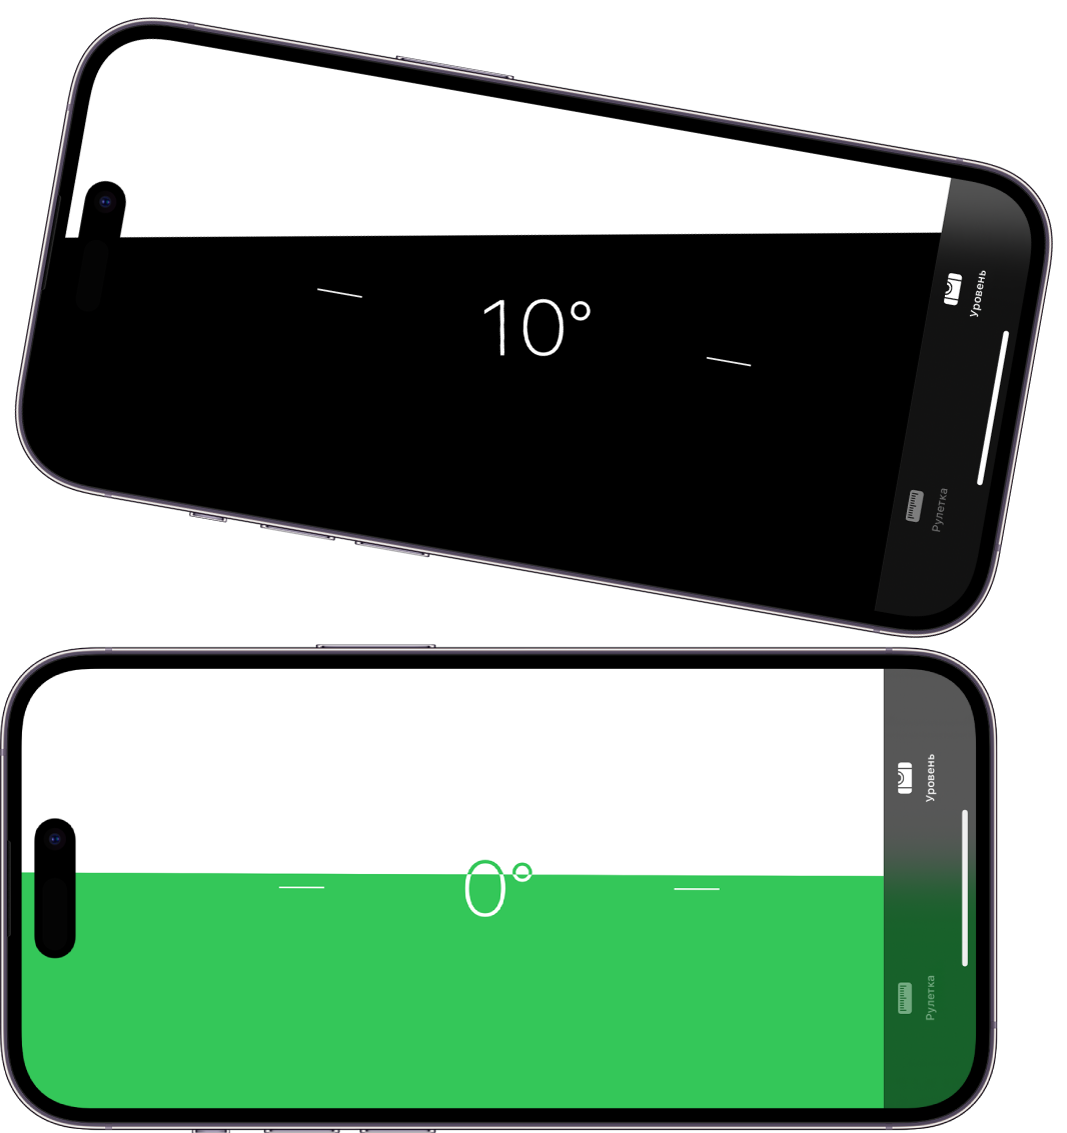 Экран измерения уровня в приложении «Рулетка». Сверху iPhone наклонен на 10 градусов, снизу iPhone расположен ровно.